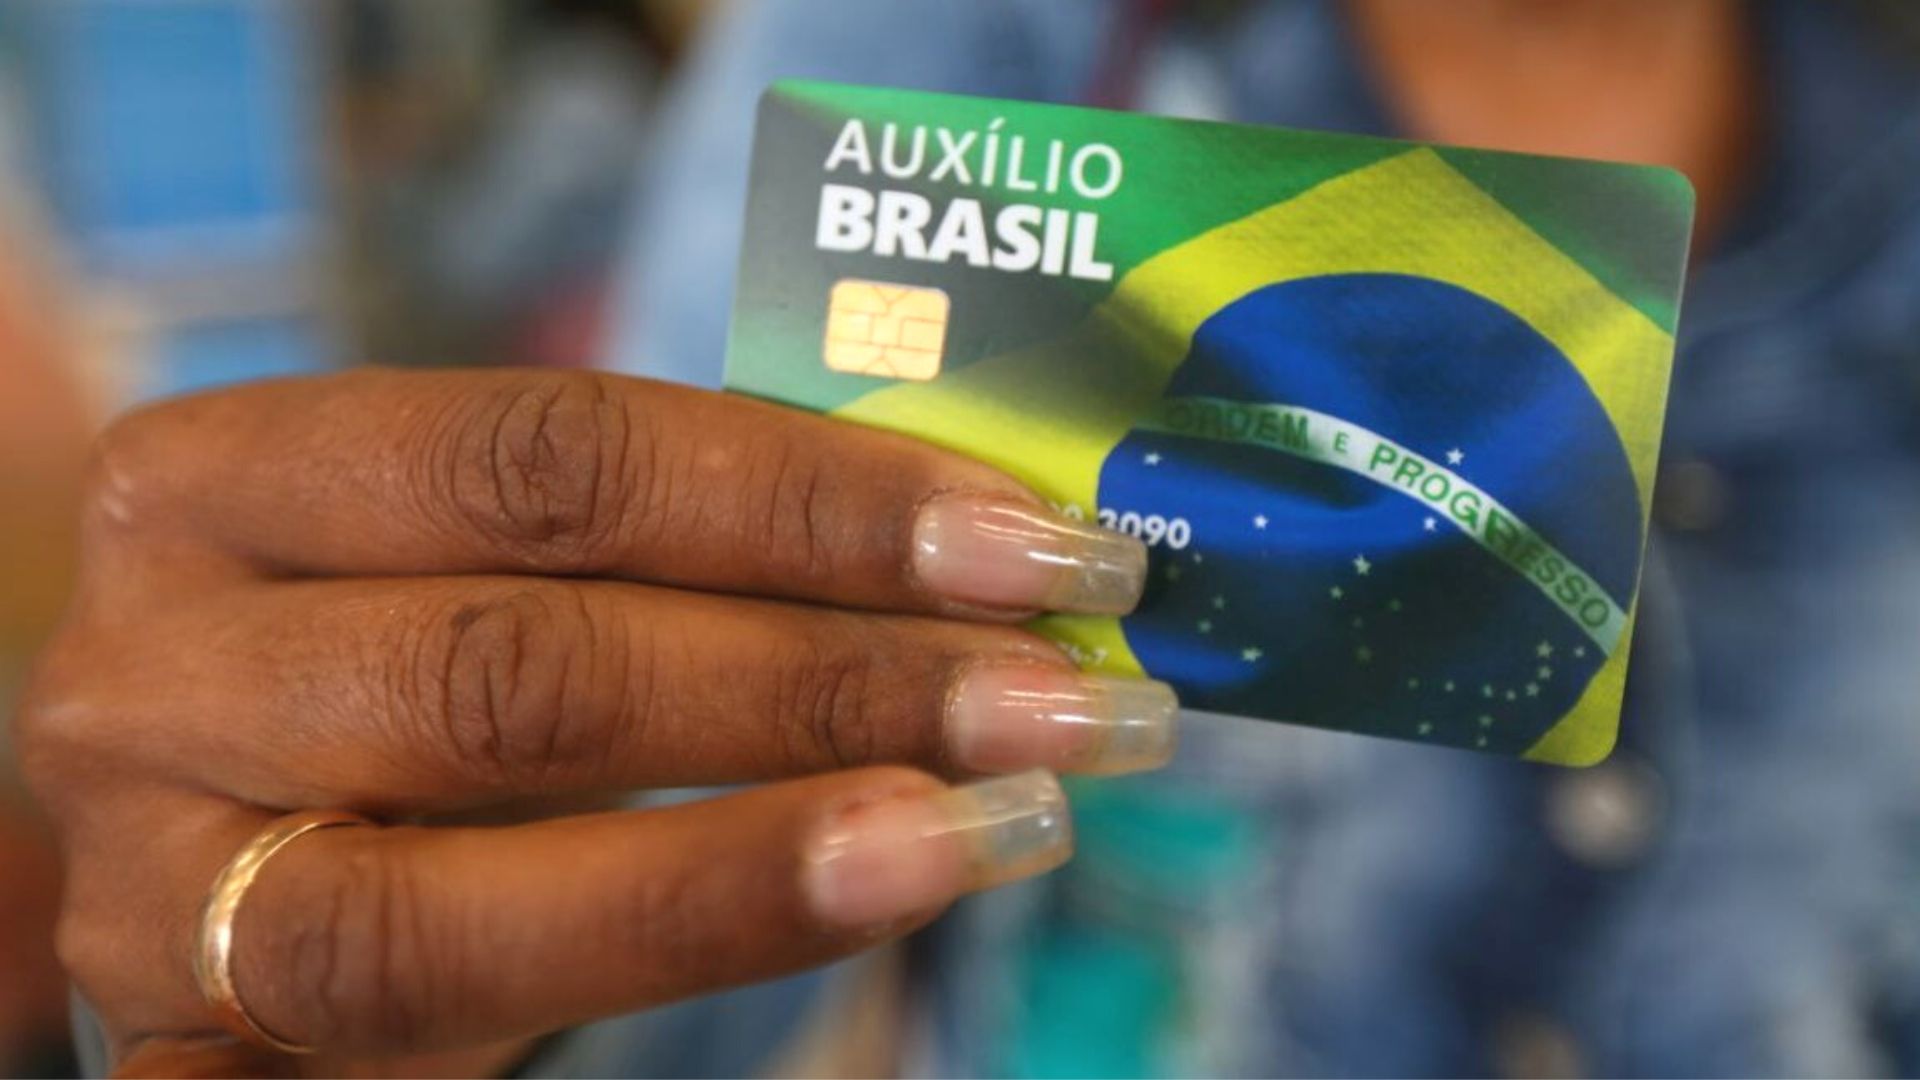 O novo cartão do Auxílio Brasil traz uma bandeira do Brasil, símbolo da campanha de Bolsonaro [Foto: Divulgação]